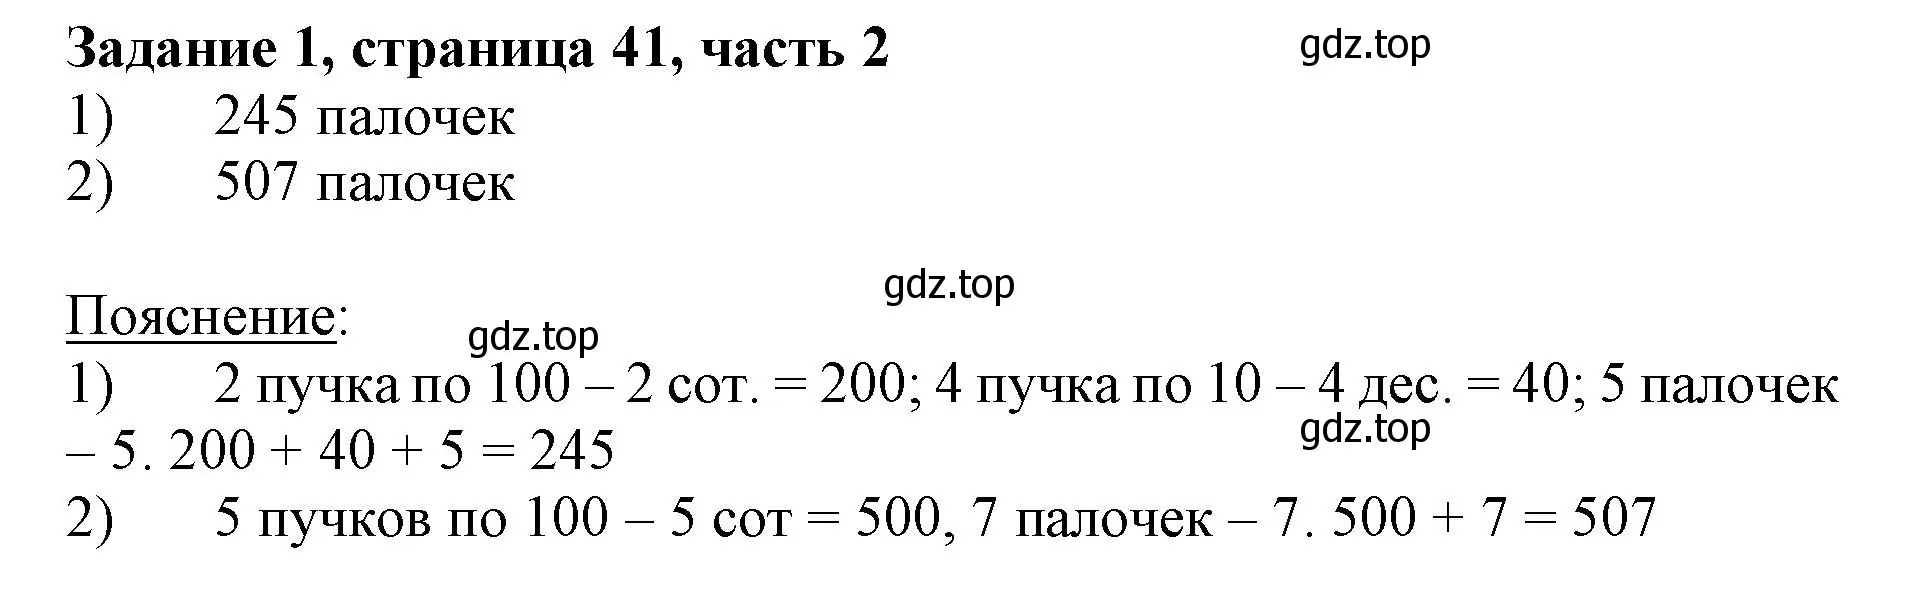 Решение номер 1 (страница 41) гдз по математике 3 класс Моро, Бантова, учебник 2 часть